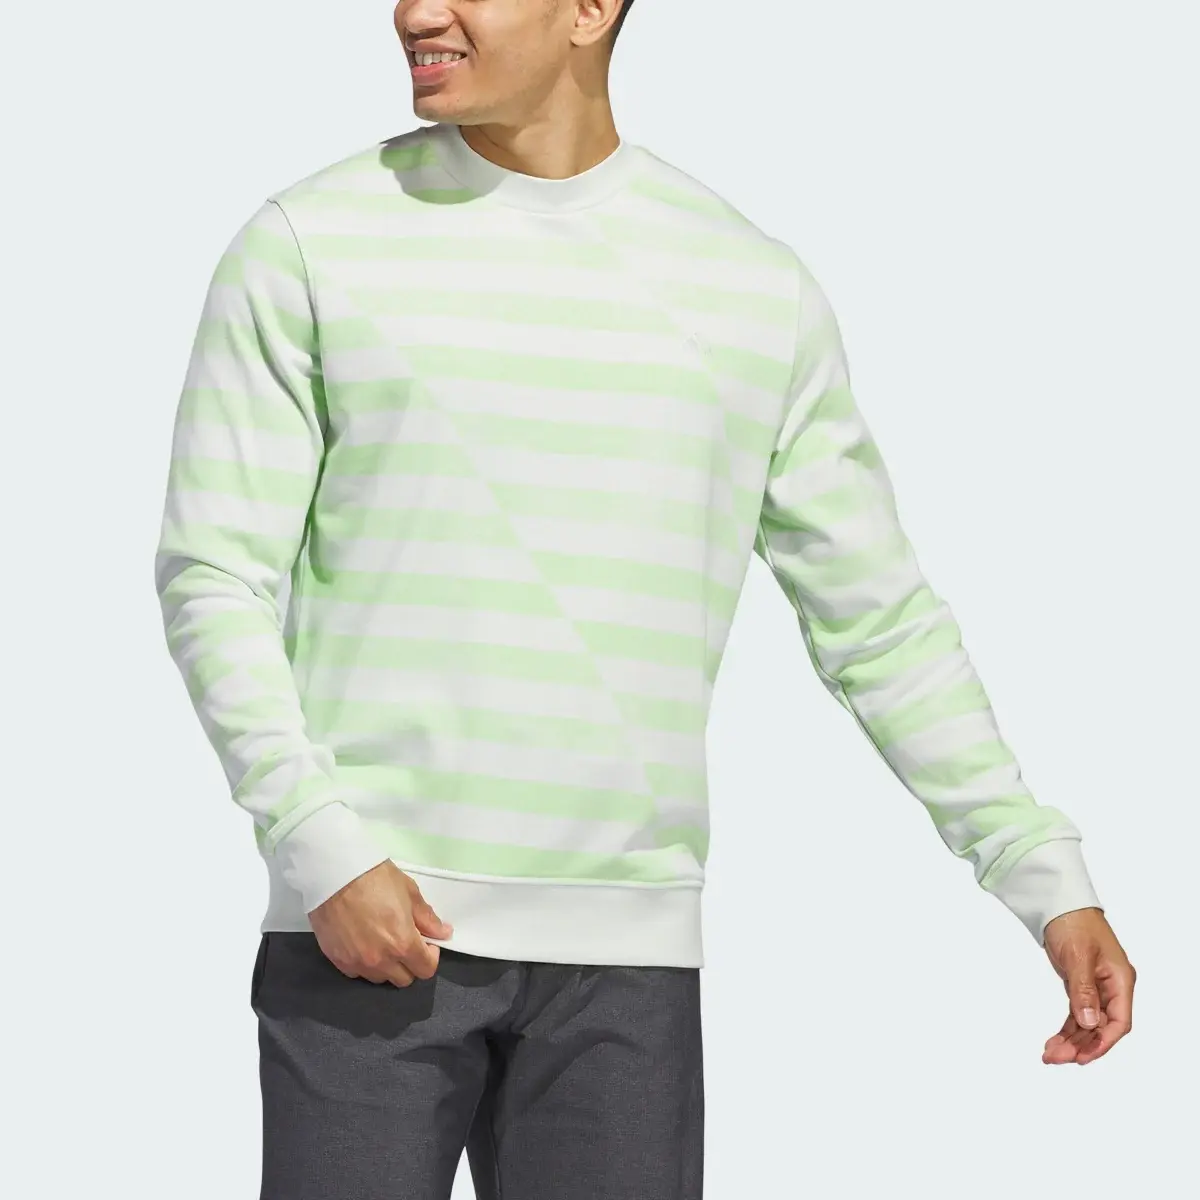 Adidas Sweatshirt Ultimate365. 1